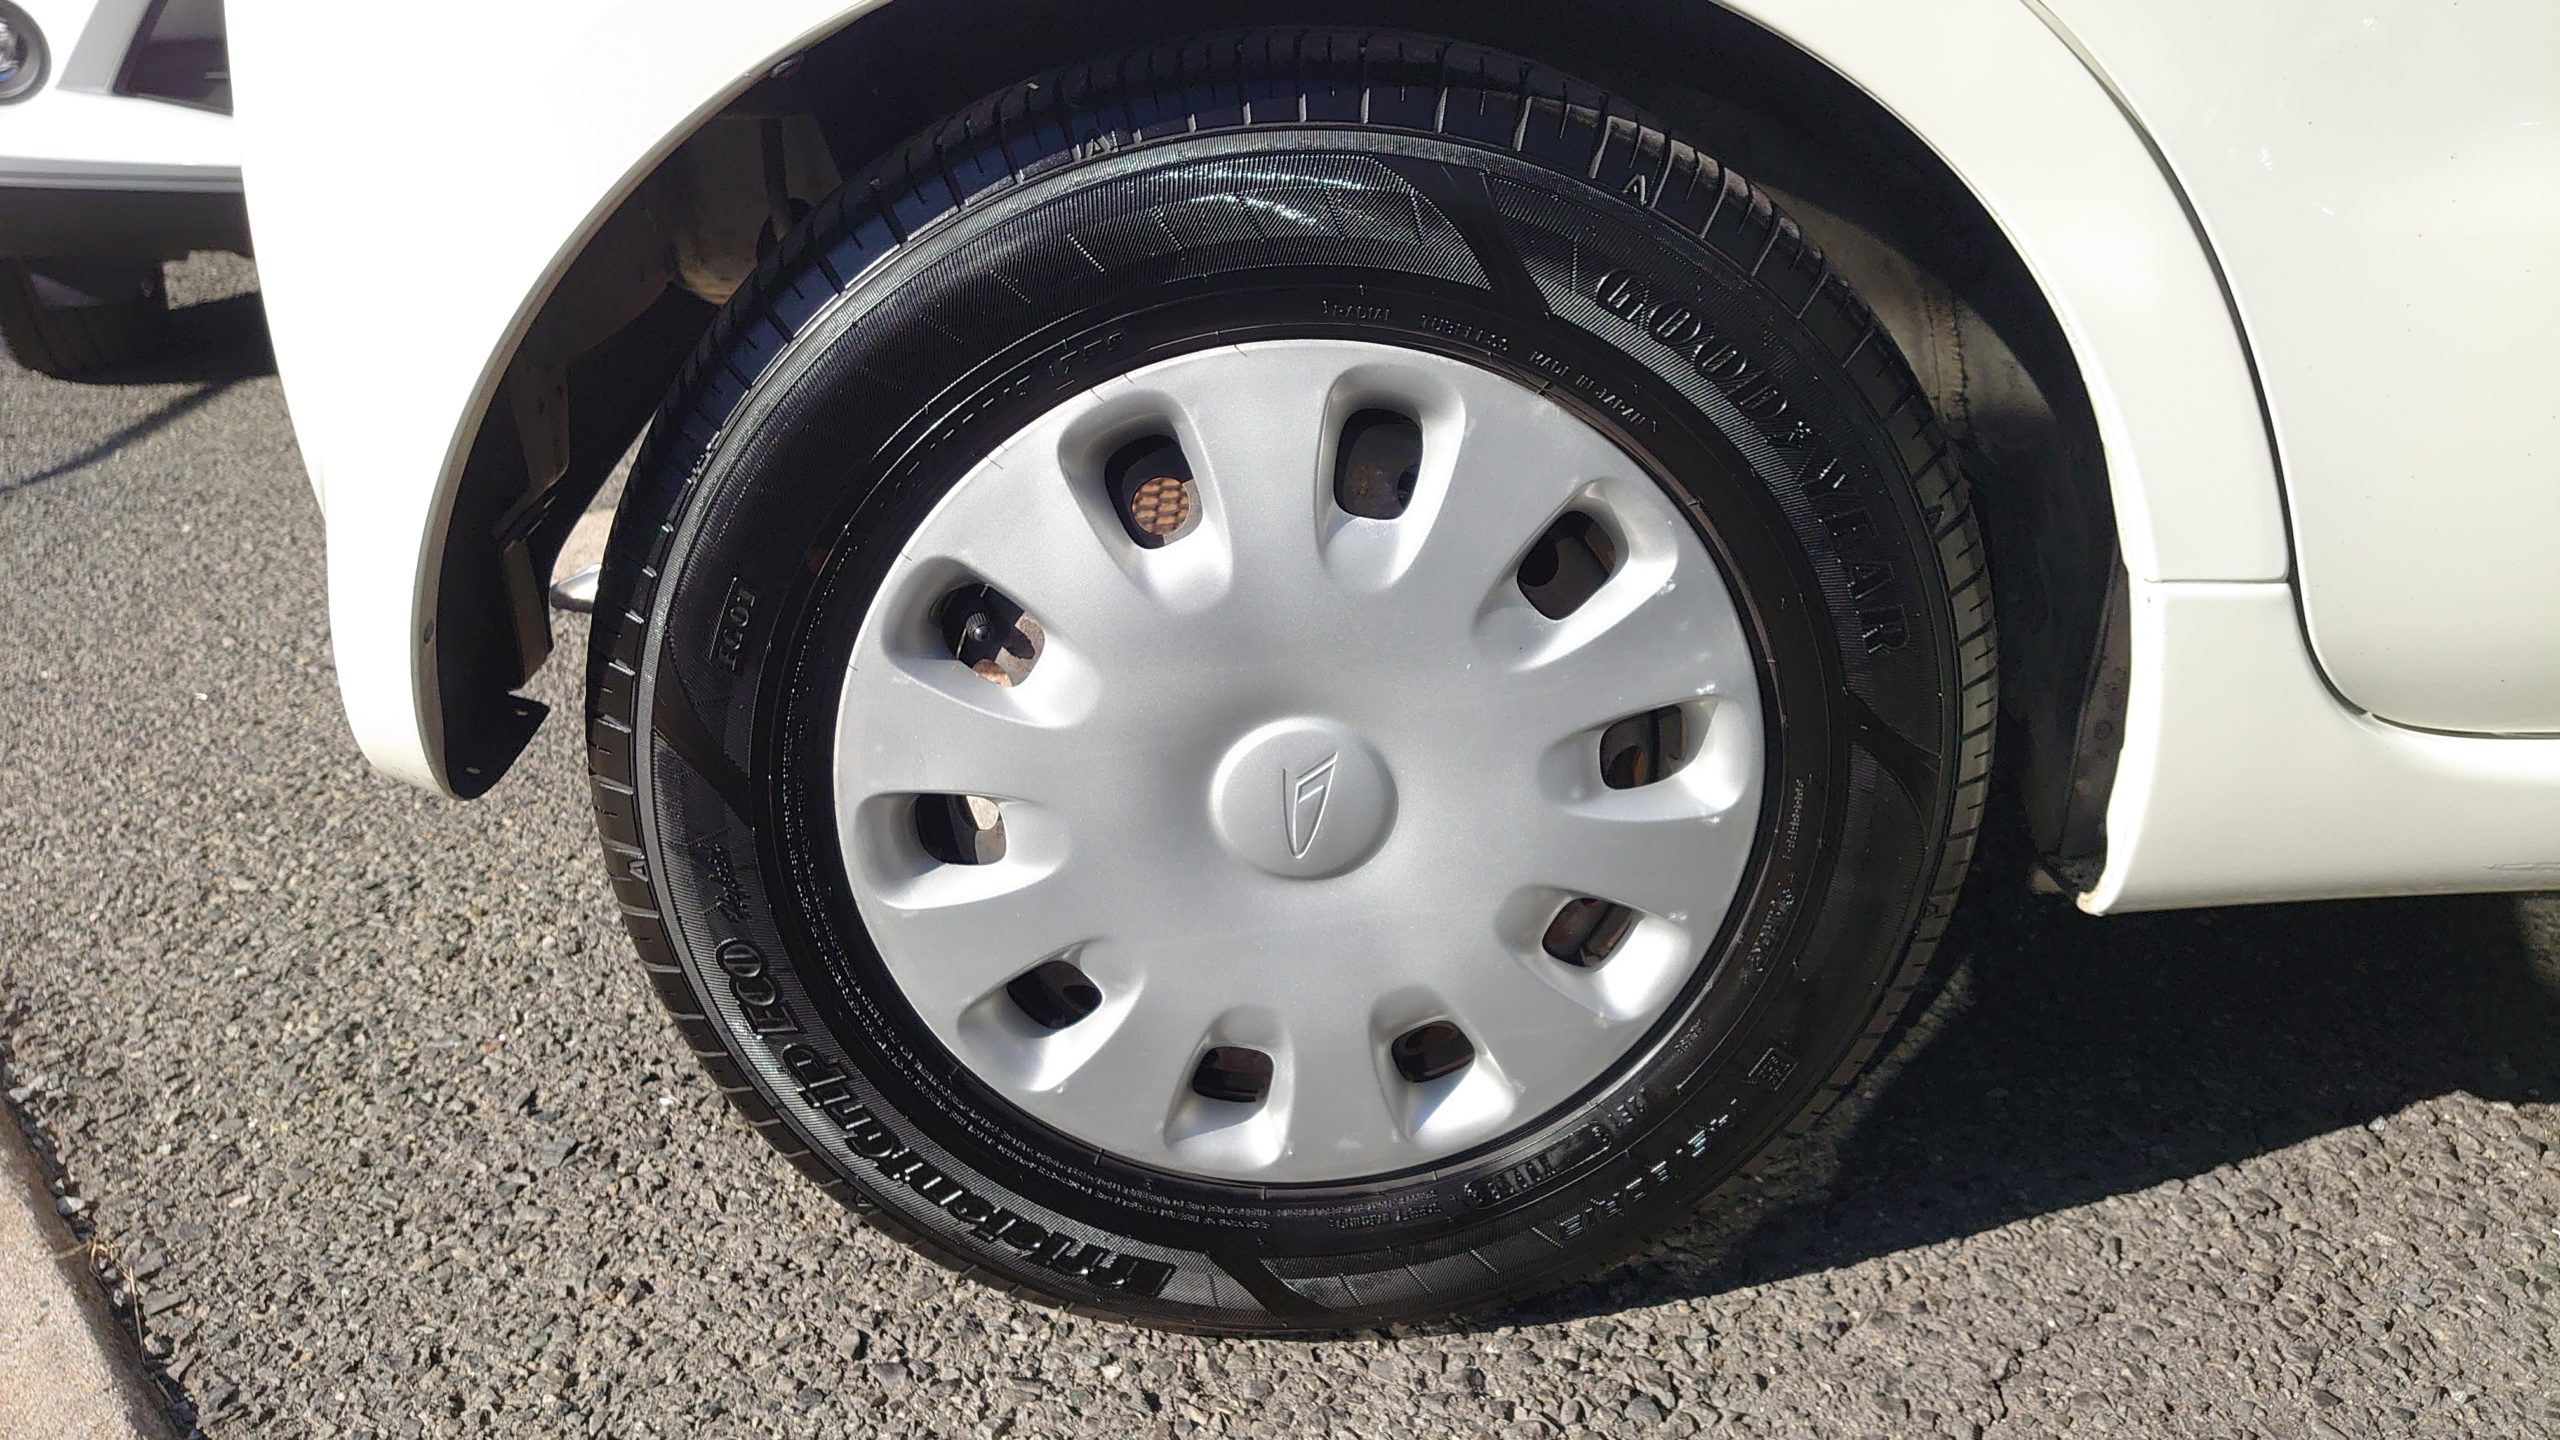 シリコーン100 のタイヤワックス Tire Wax を使ってみた 洗車好きな整備士の車いじりブログ